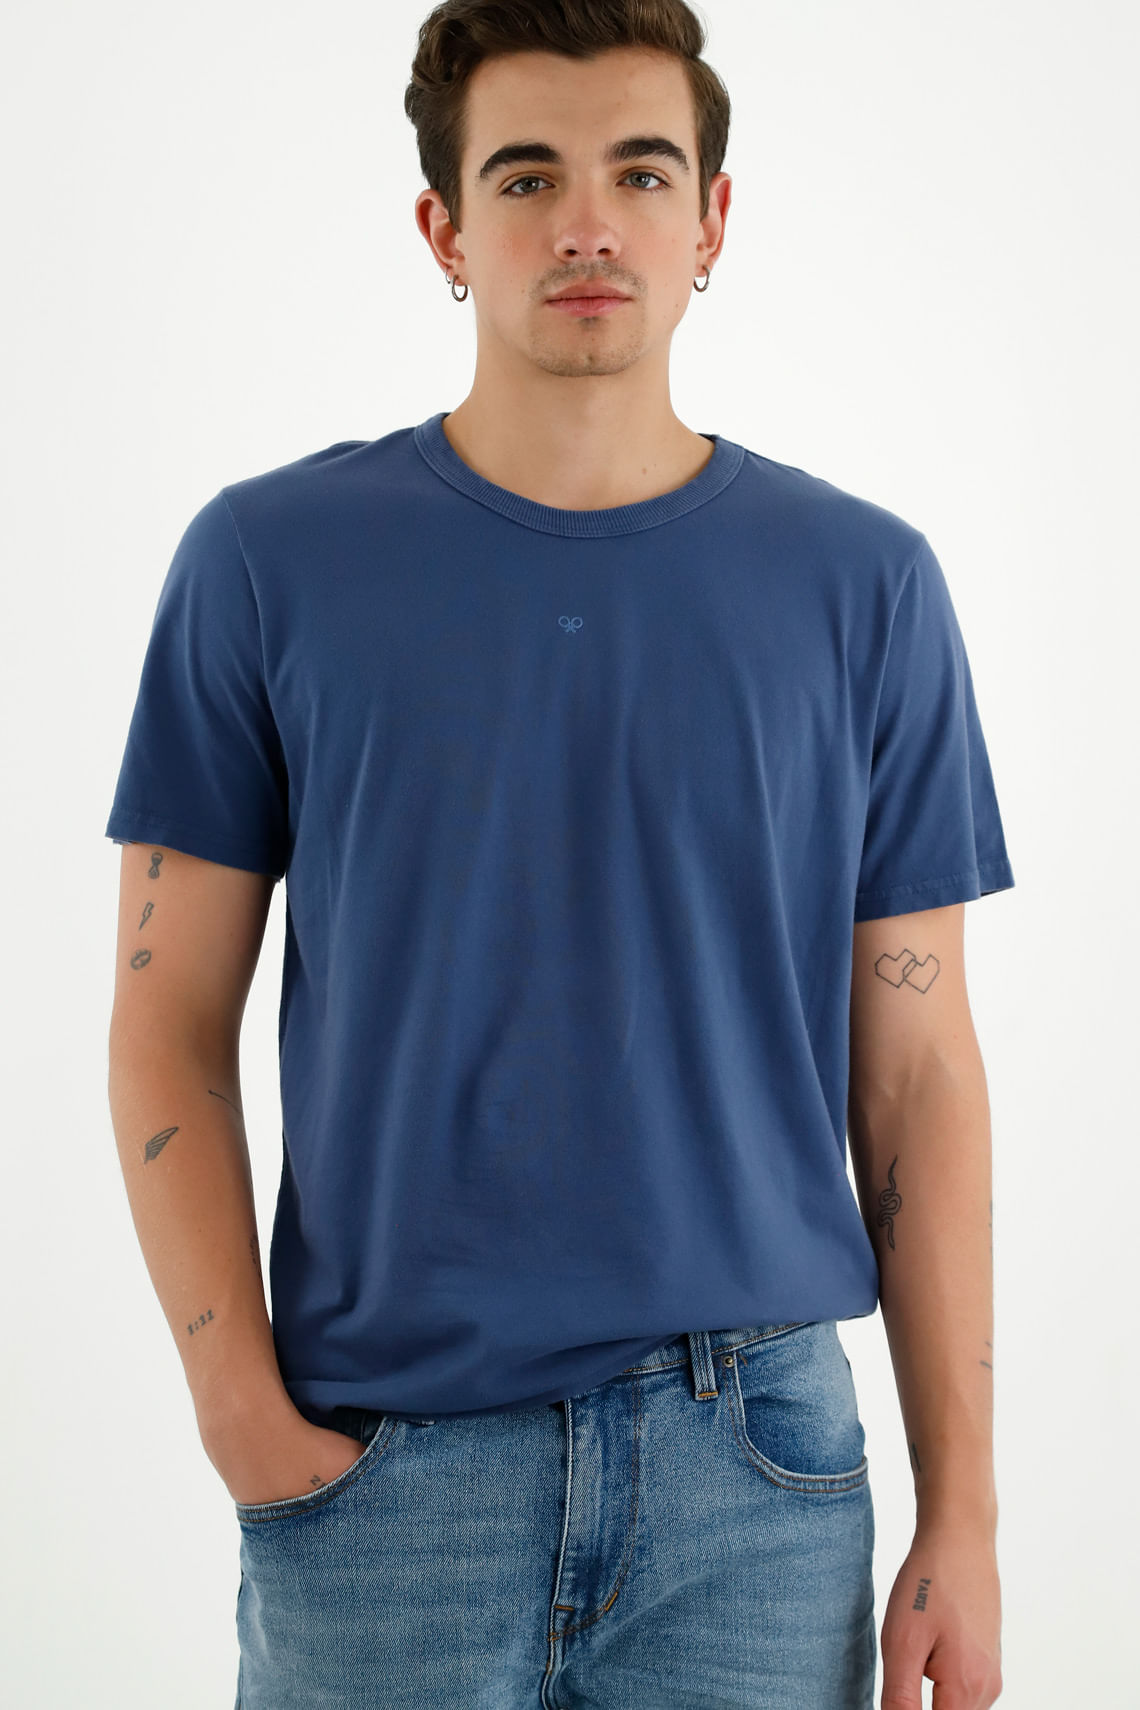 Ropa para hombre, camisetas, jeans, camisas y más | Tennis - Tennis | Tienda Ropa Online en Colombia